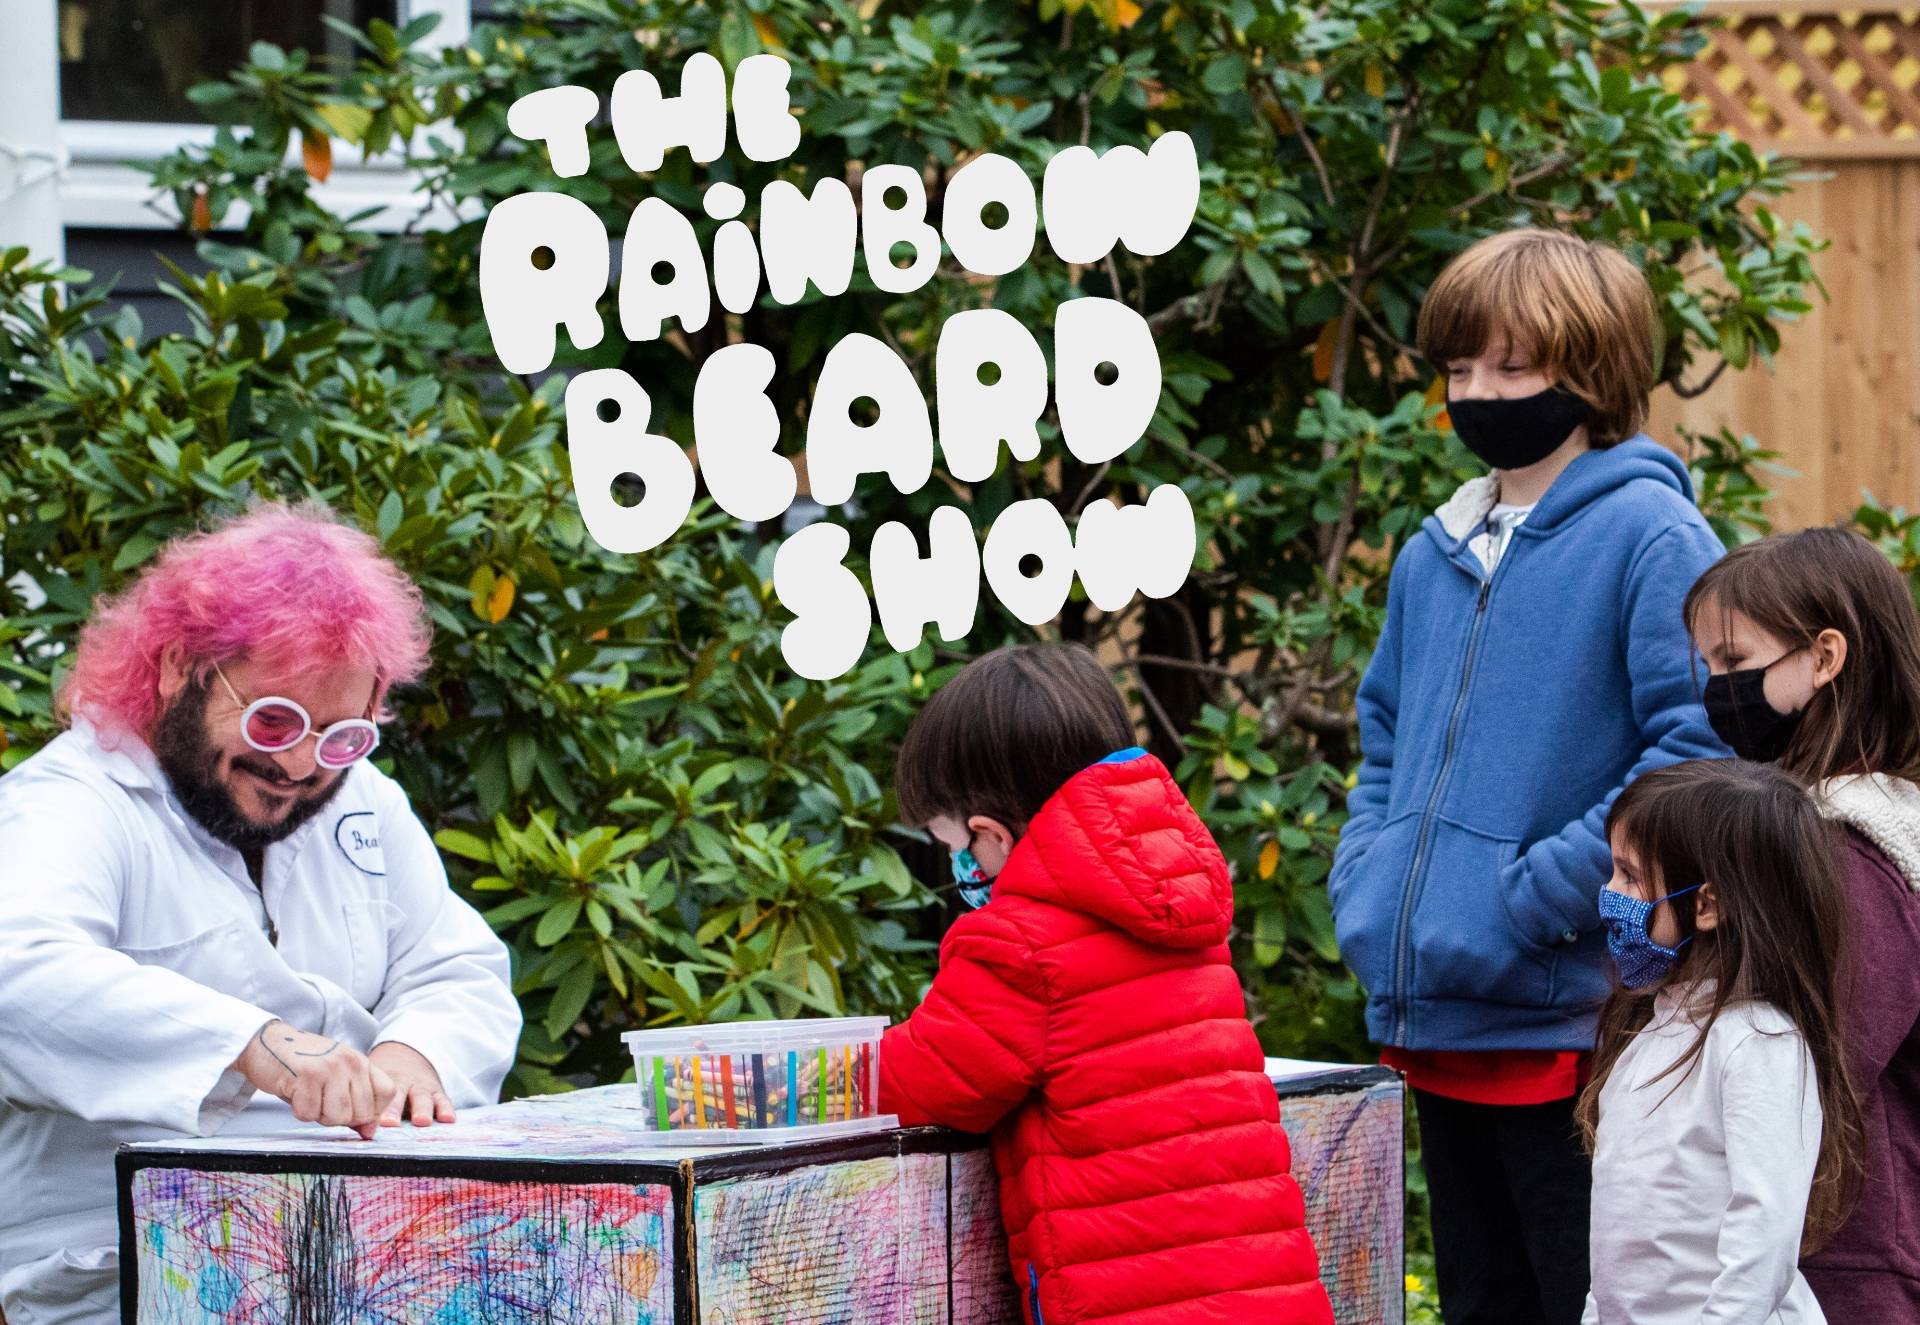 The Rainbow Beard Show 